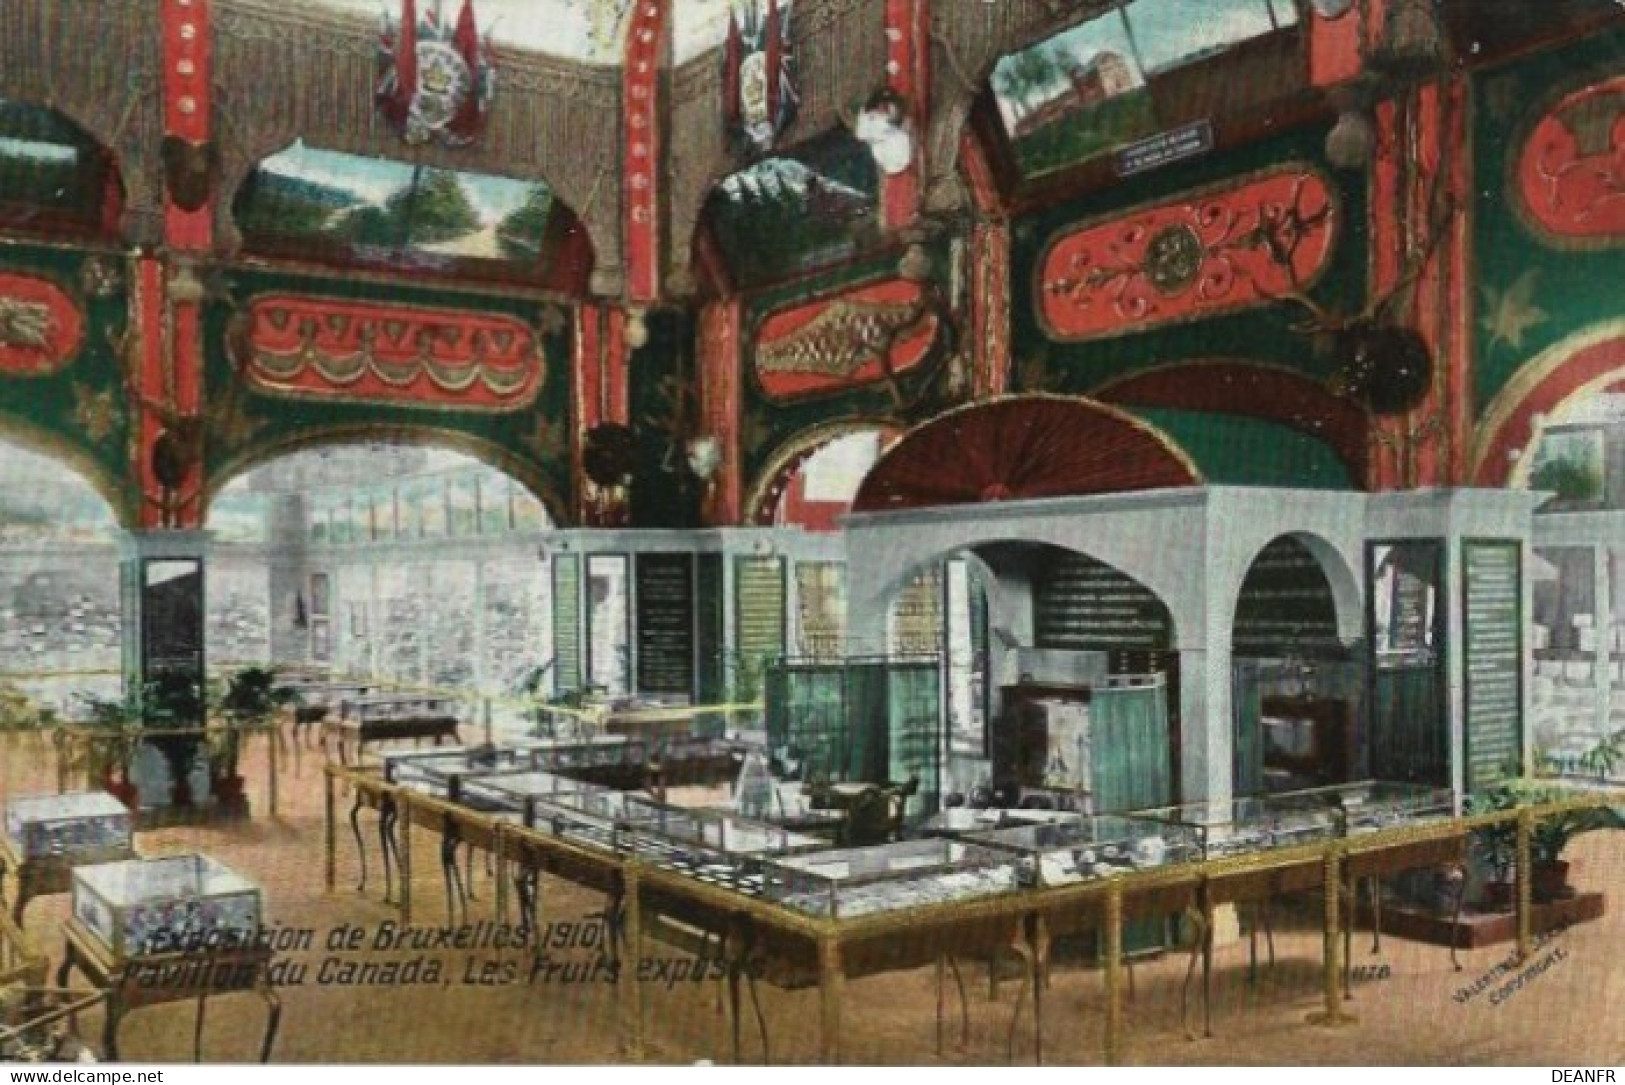 EXPOSITION De BRUXELLES 1910 : Pavillon Canada,Les Fruits Exposés. Carte Impeccable. - Weltausstellungen